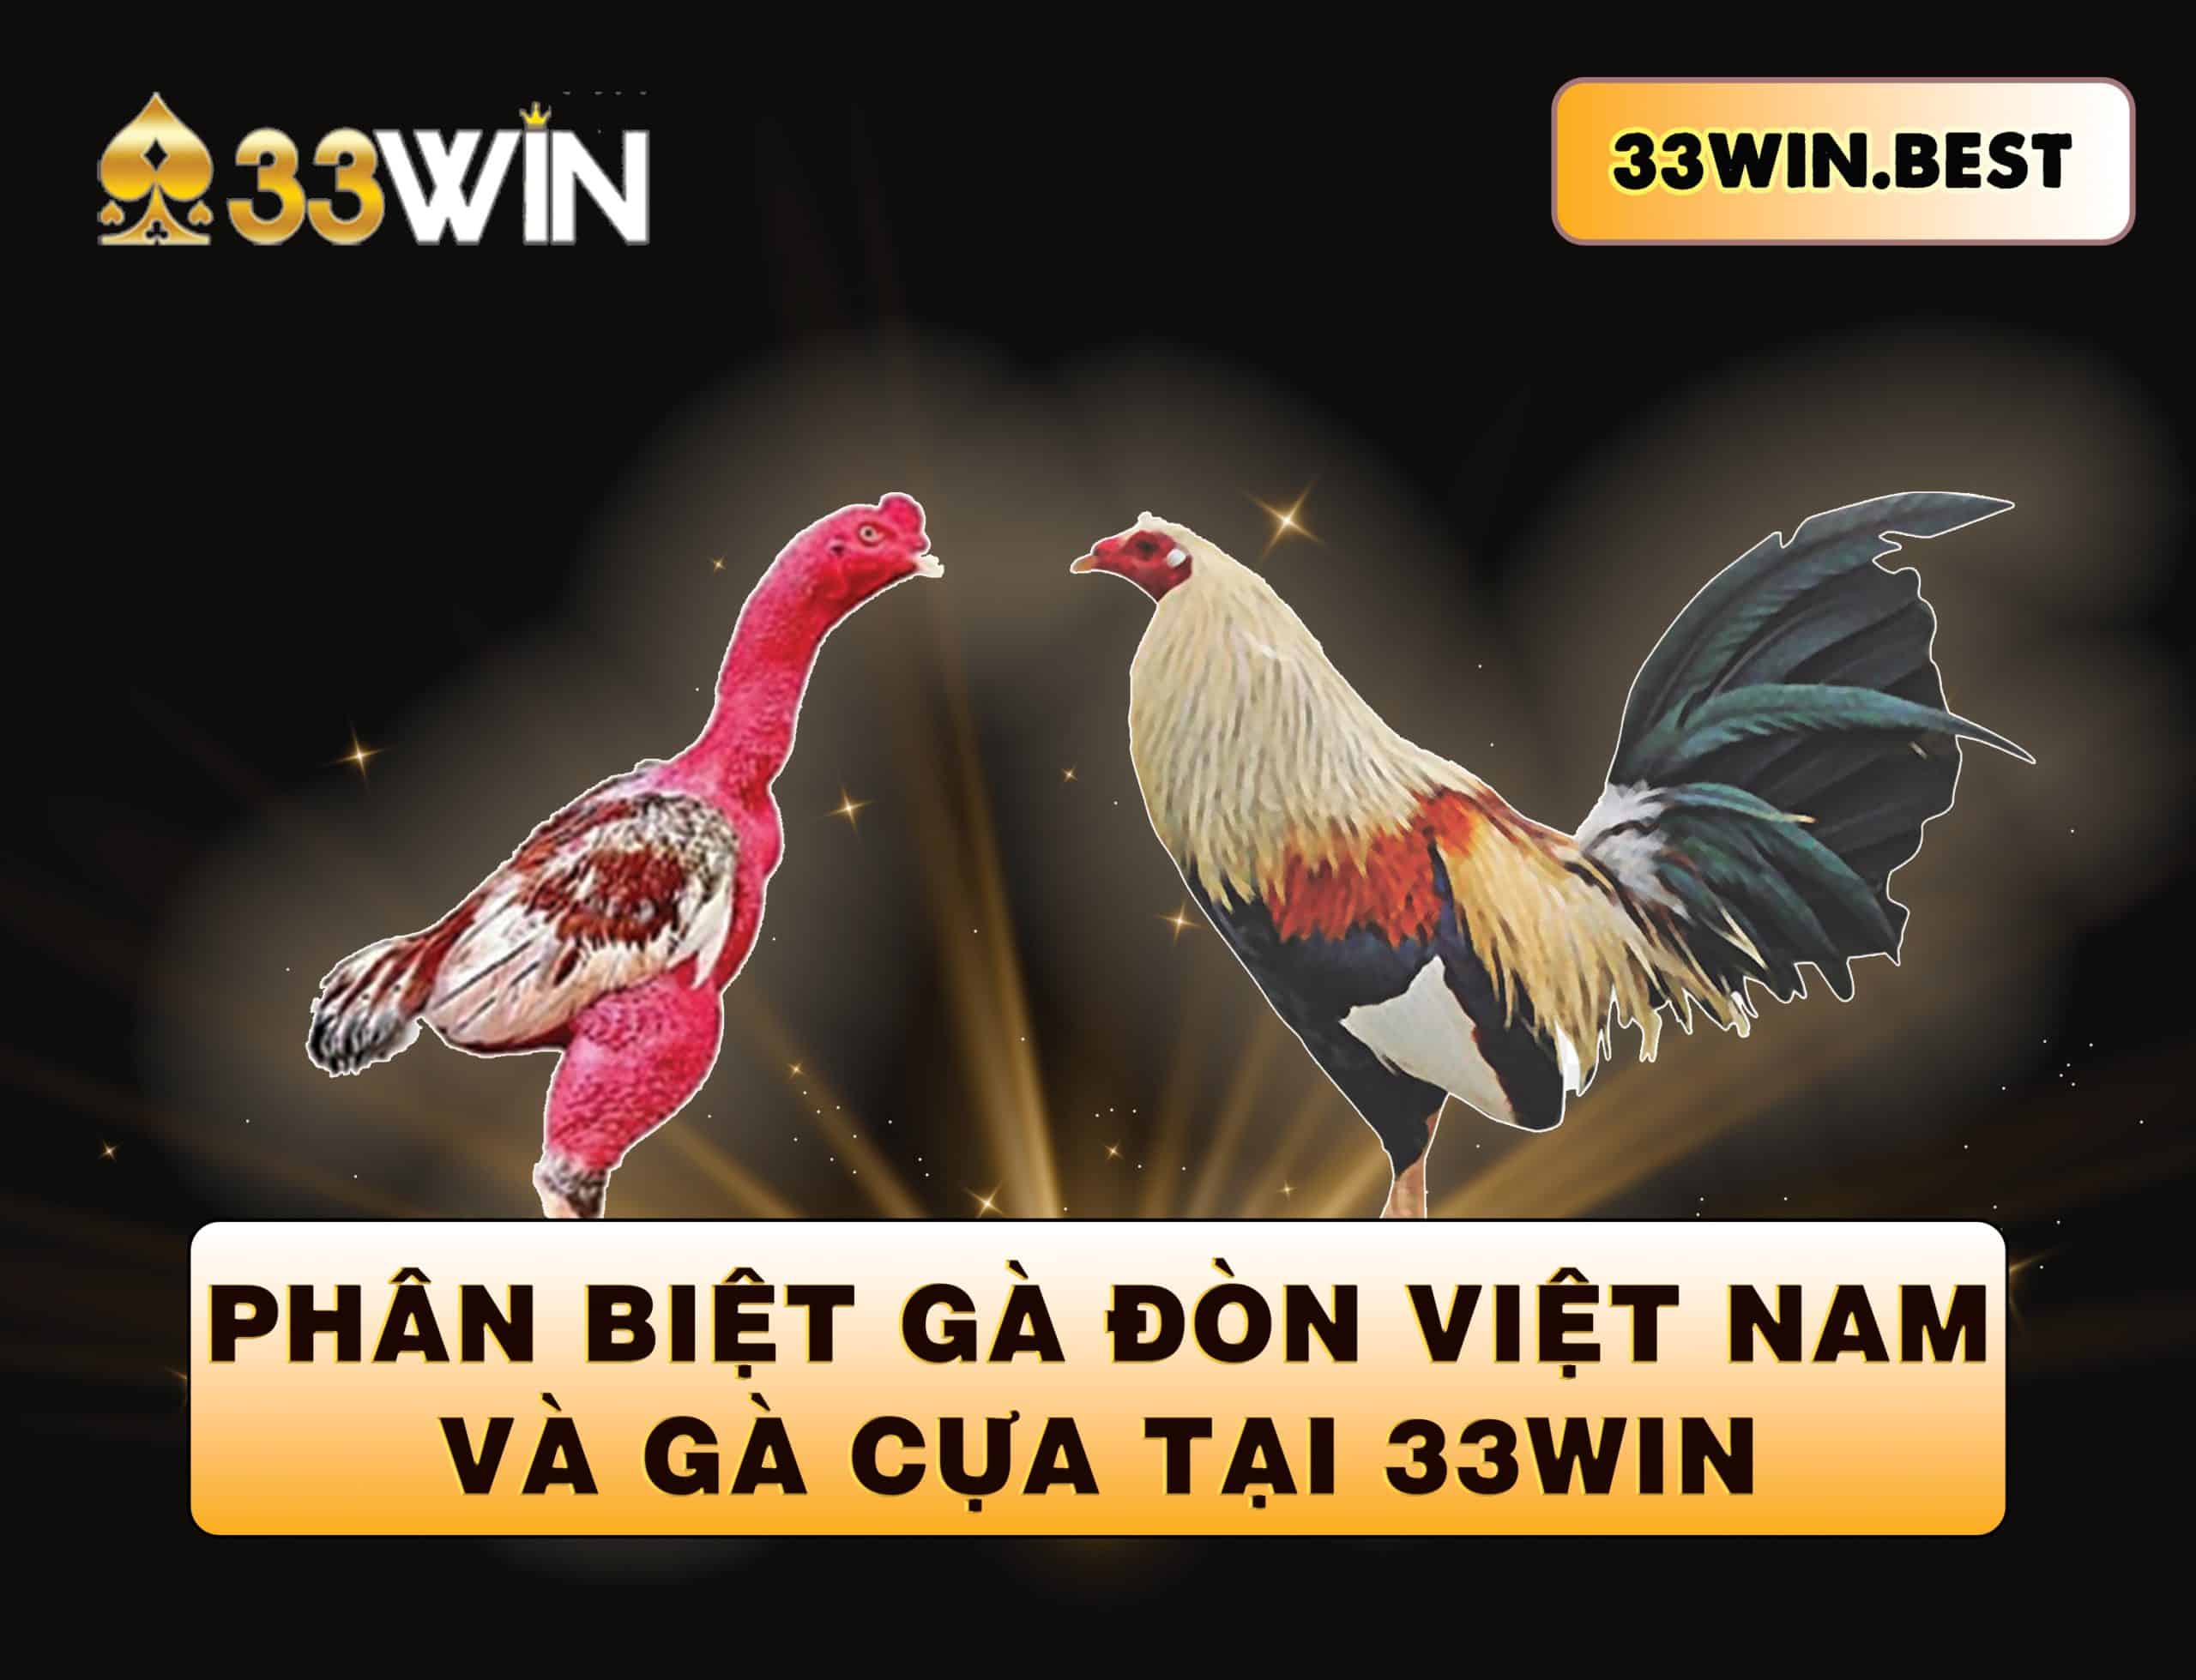 Cách nhận biết gà đòn của Việt Nam và gà cựa tại 33Win